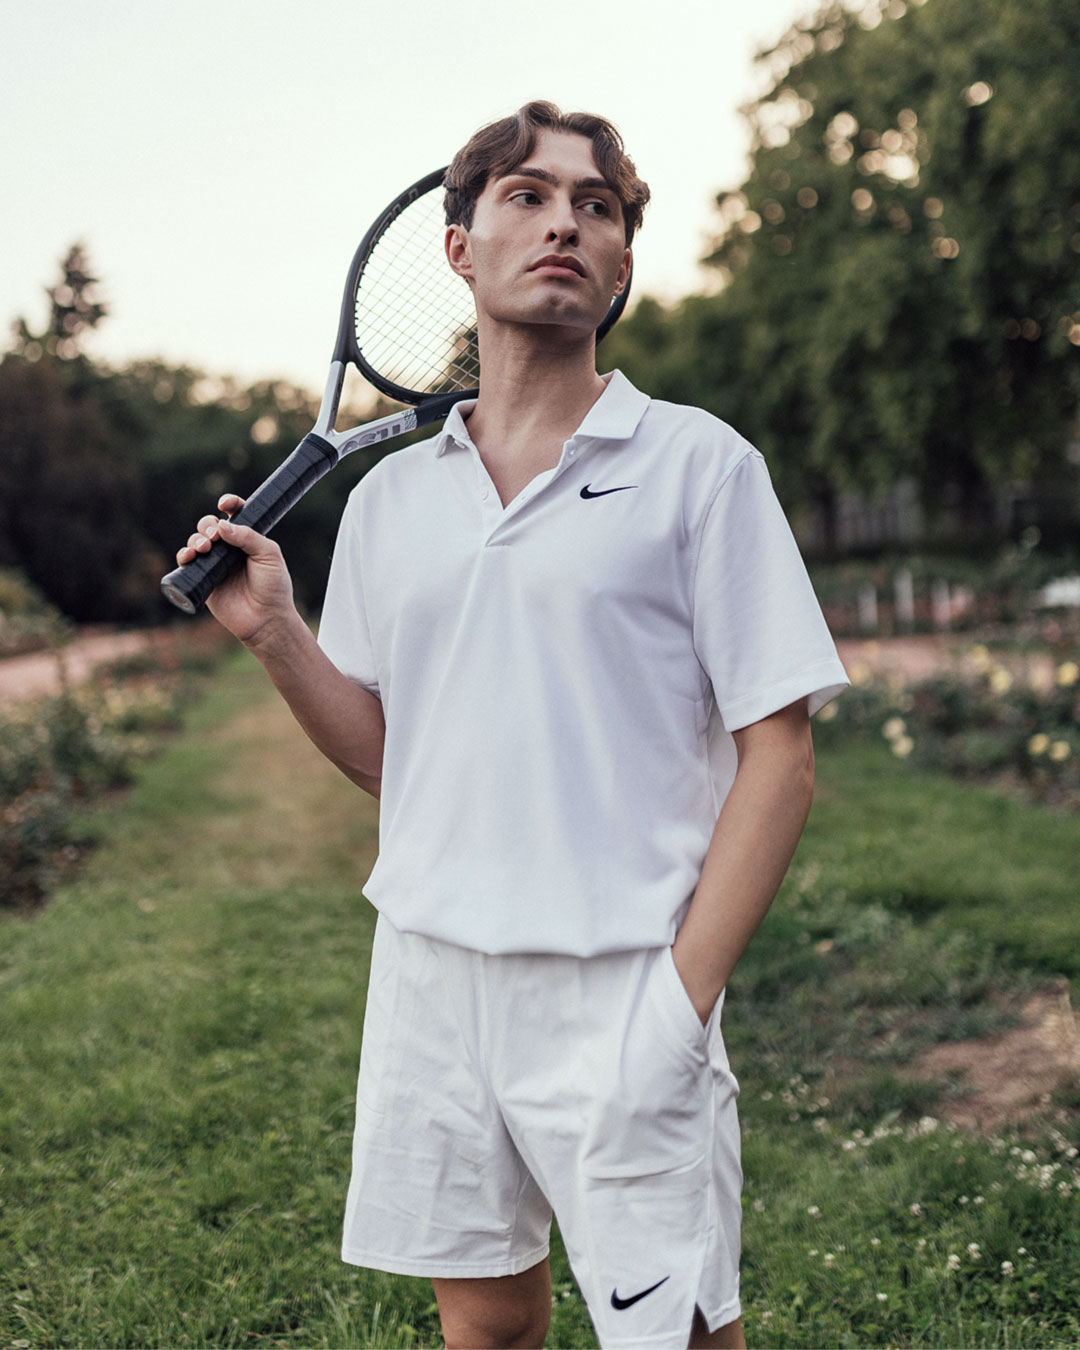 Tennis-Outfit für Männer.